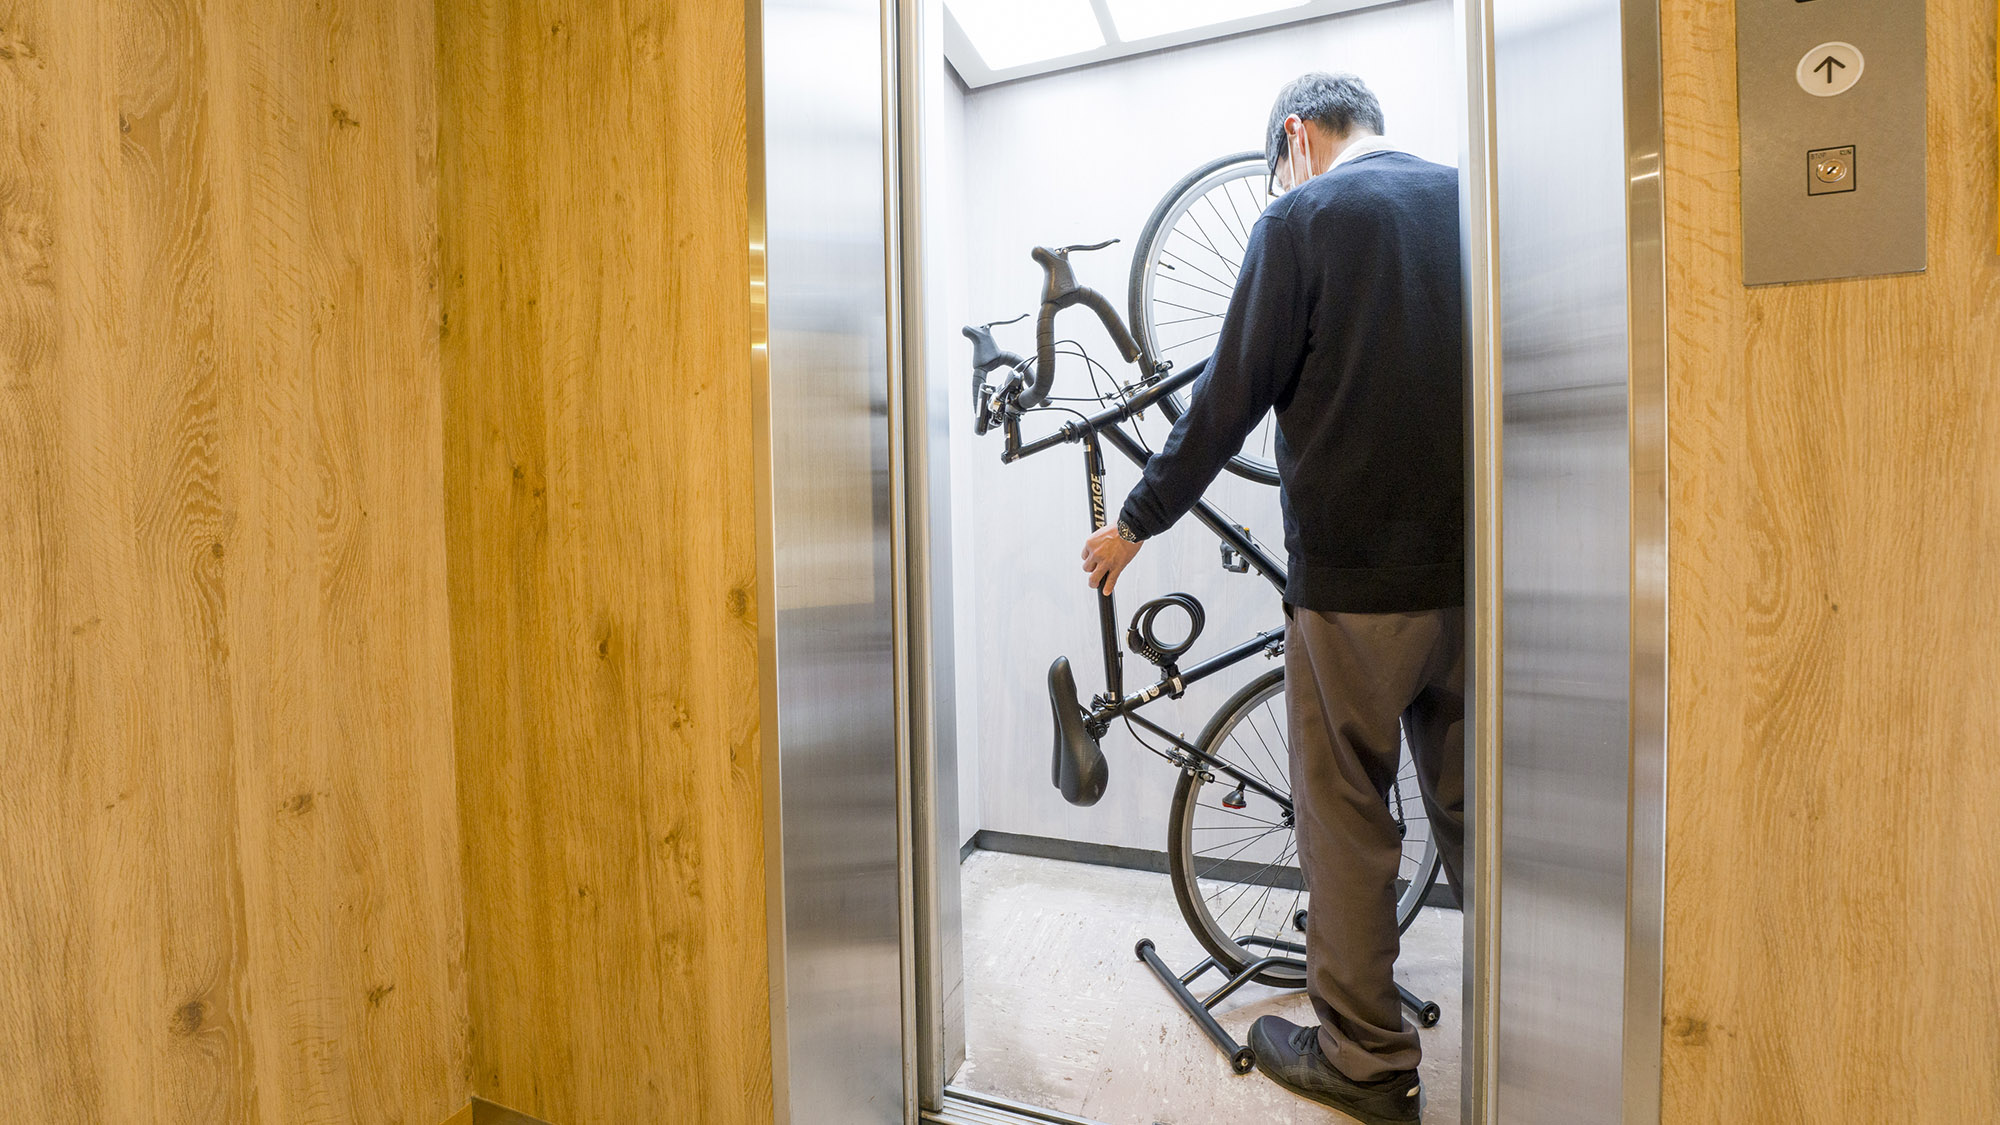 ・【自転車運搬】エレベータ内は少々狭いため、自転車を立てての運搬をお願いしております